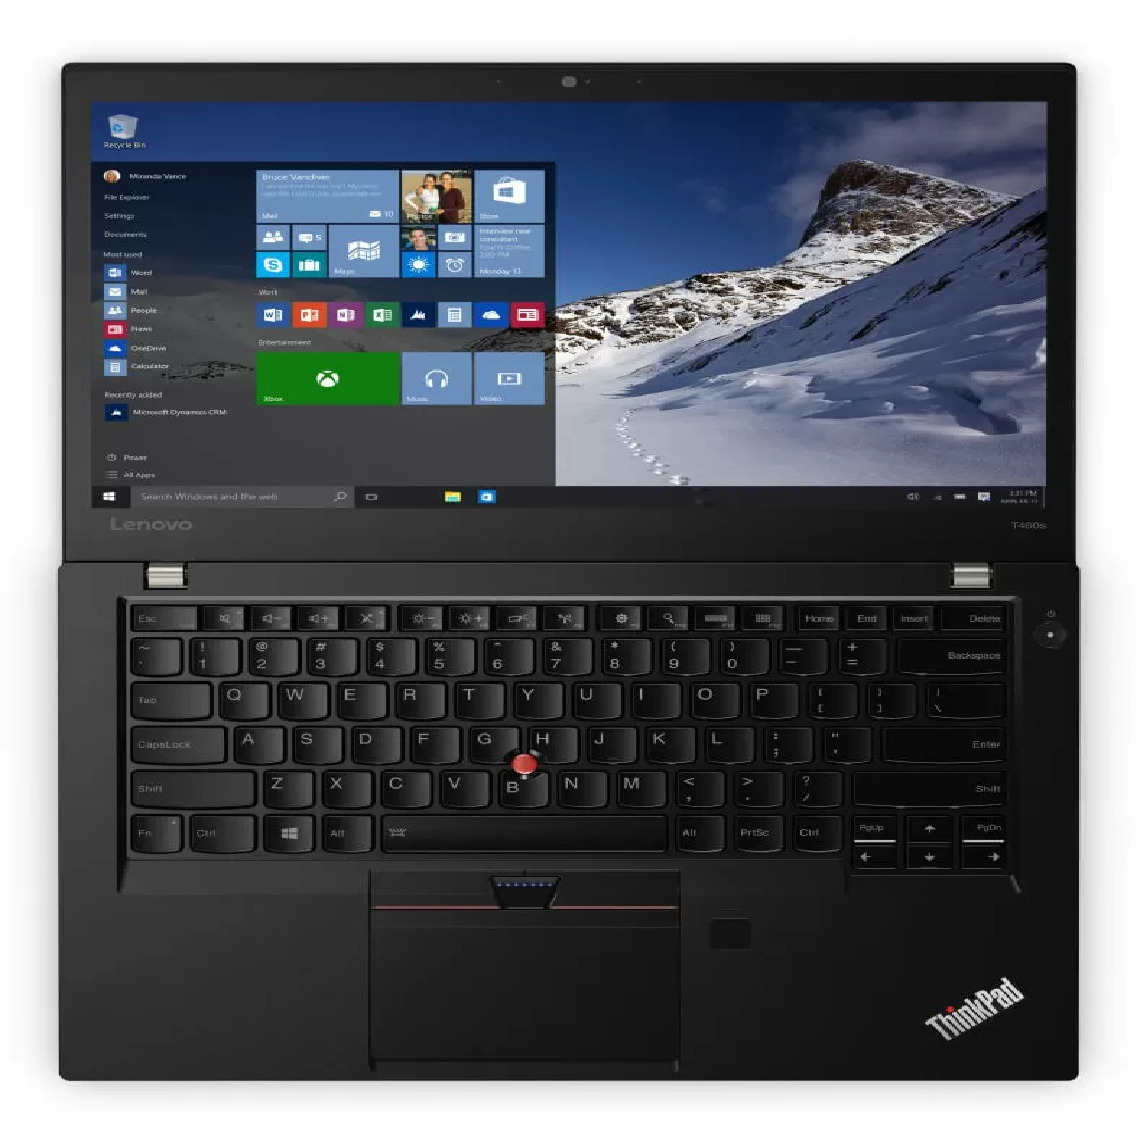 Lenovo - ThinkPad T460s, Intel Core, Intel Core i7-6600U, 8GB RAM, 256GB SSD, 14"FHD, WLAN, Bluetooth, WebCam - PC Portable